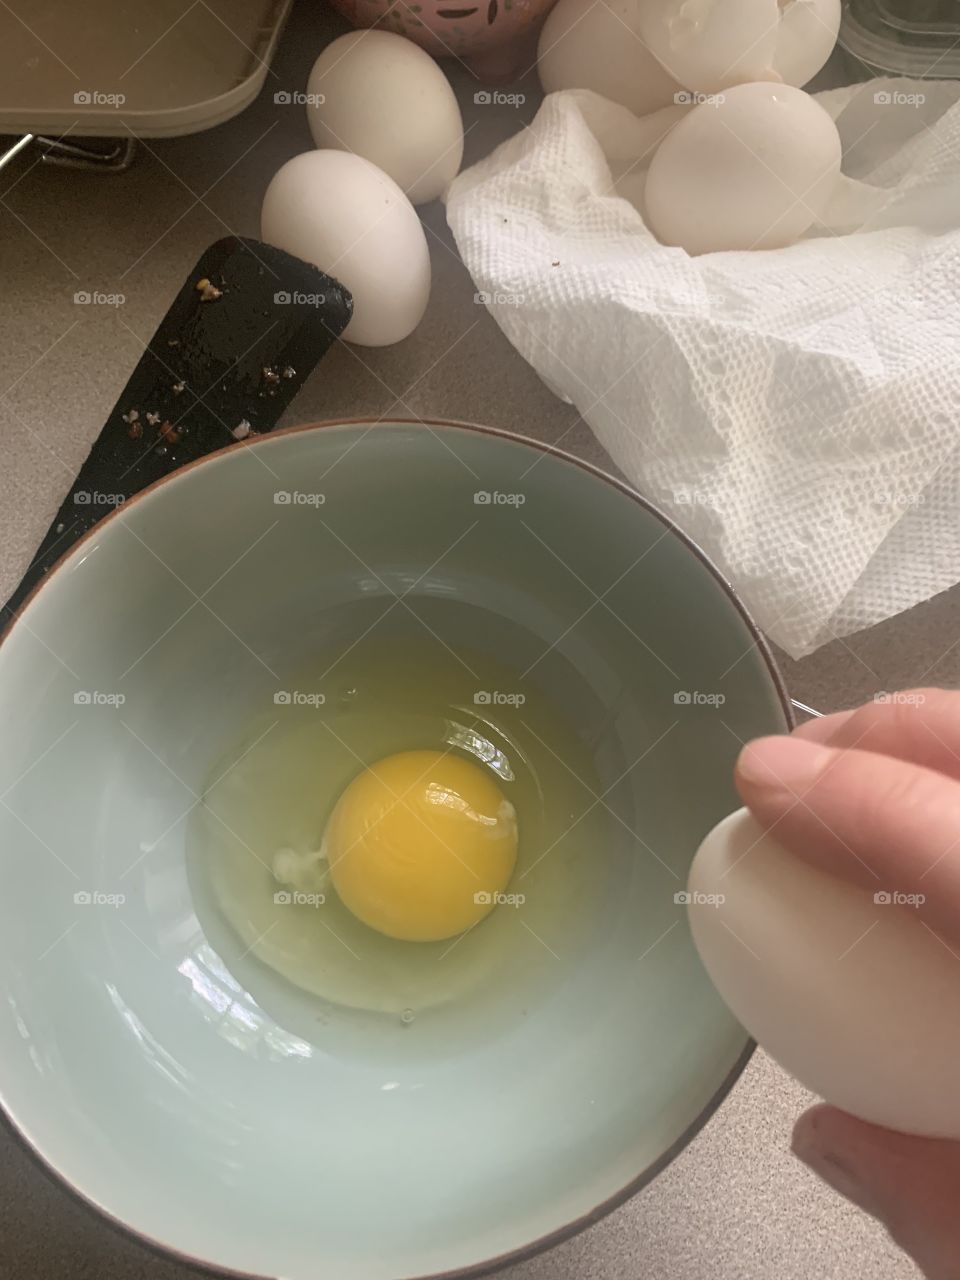 Egg cracking